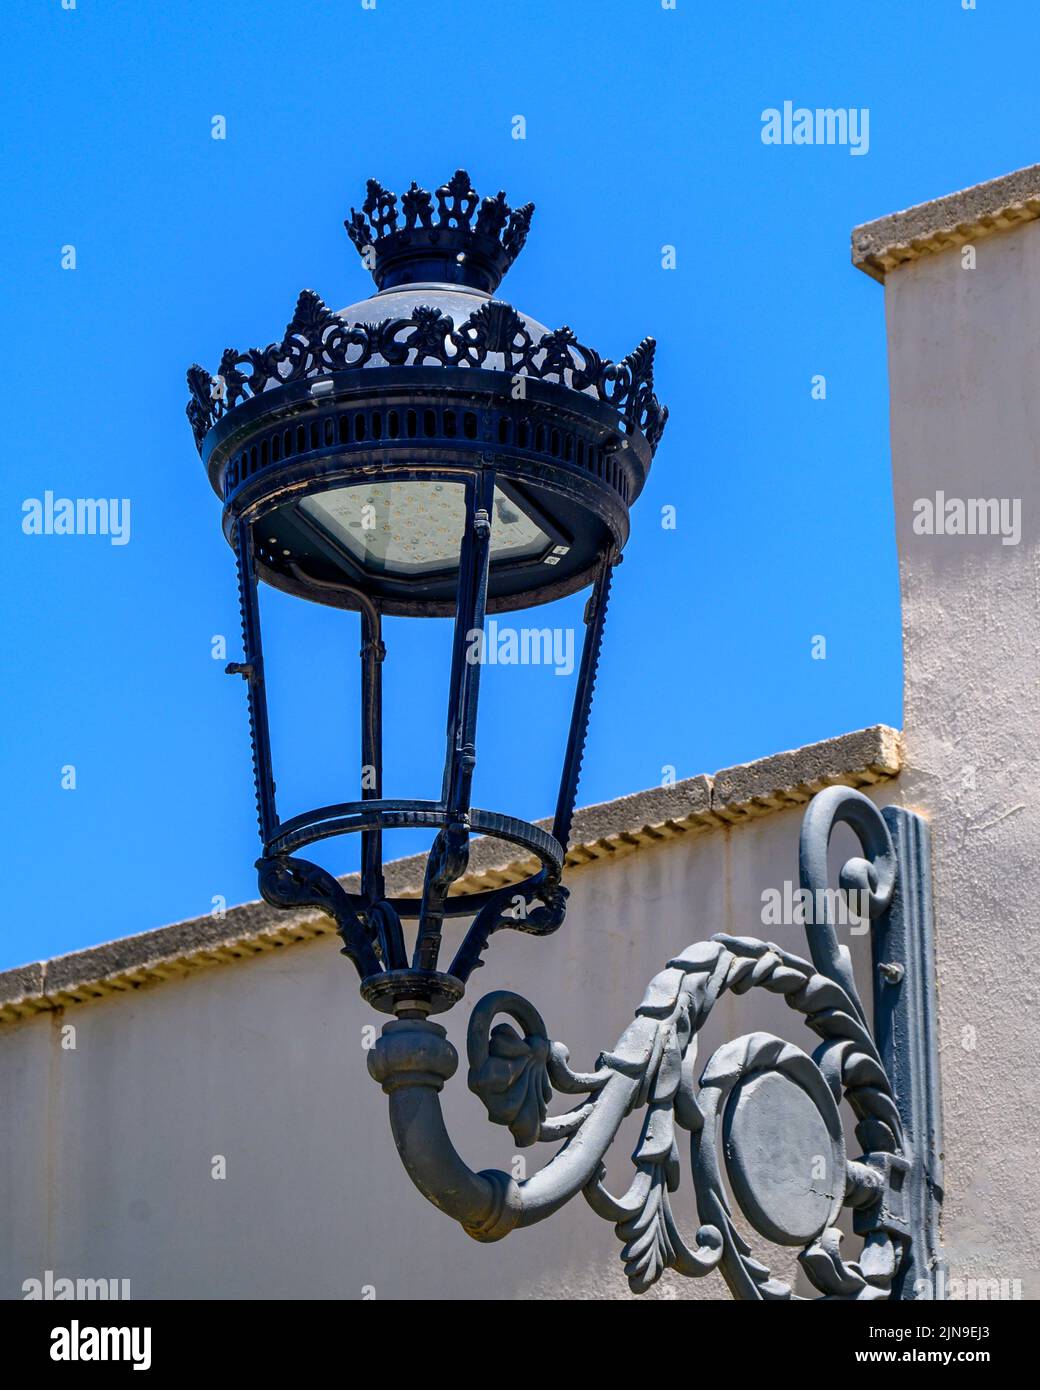 Arquitectura exterior del edificio de la plaza de toros. Lámpara eléctrica de estilo colonial con luz LED Foto de stock